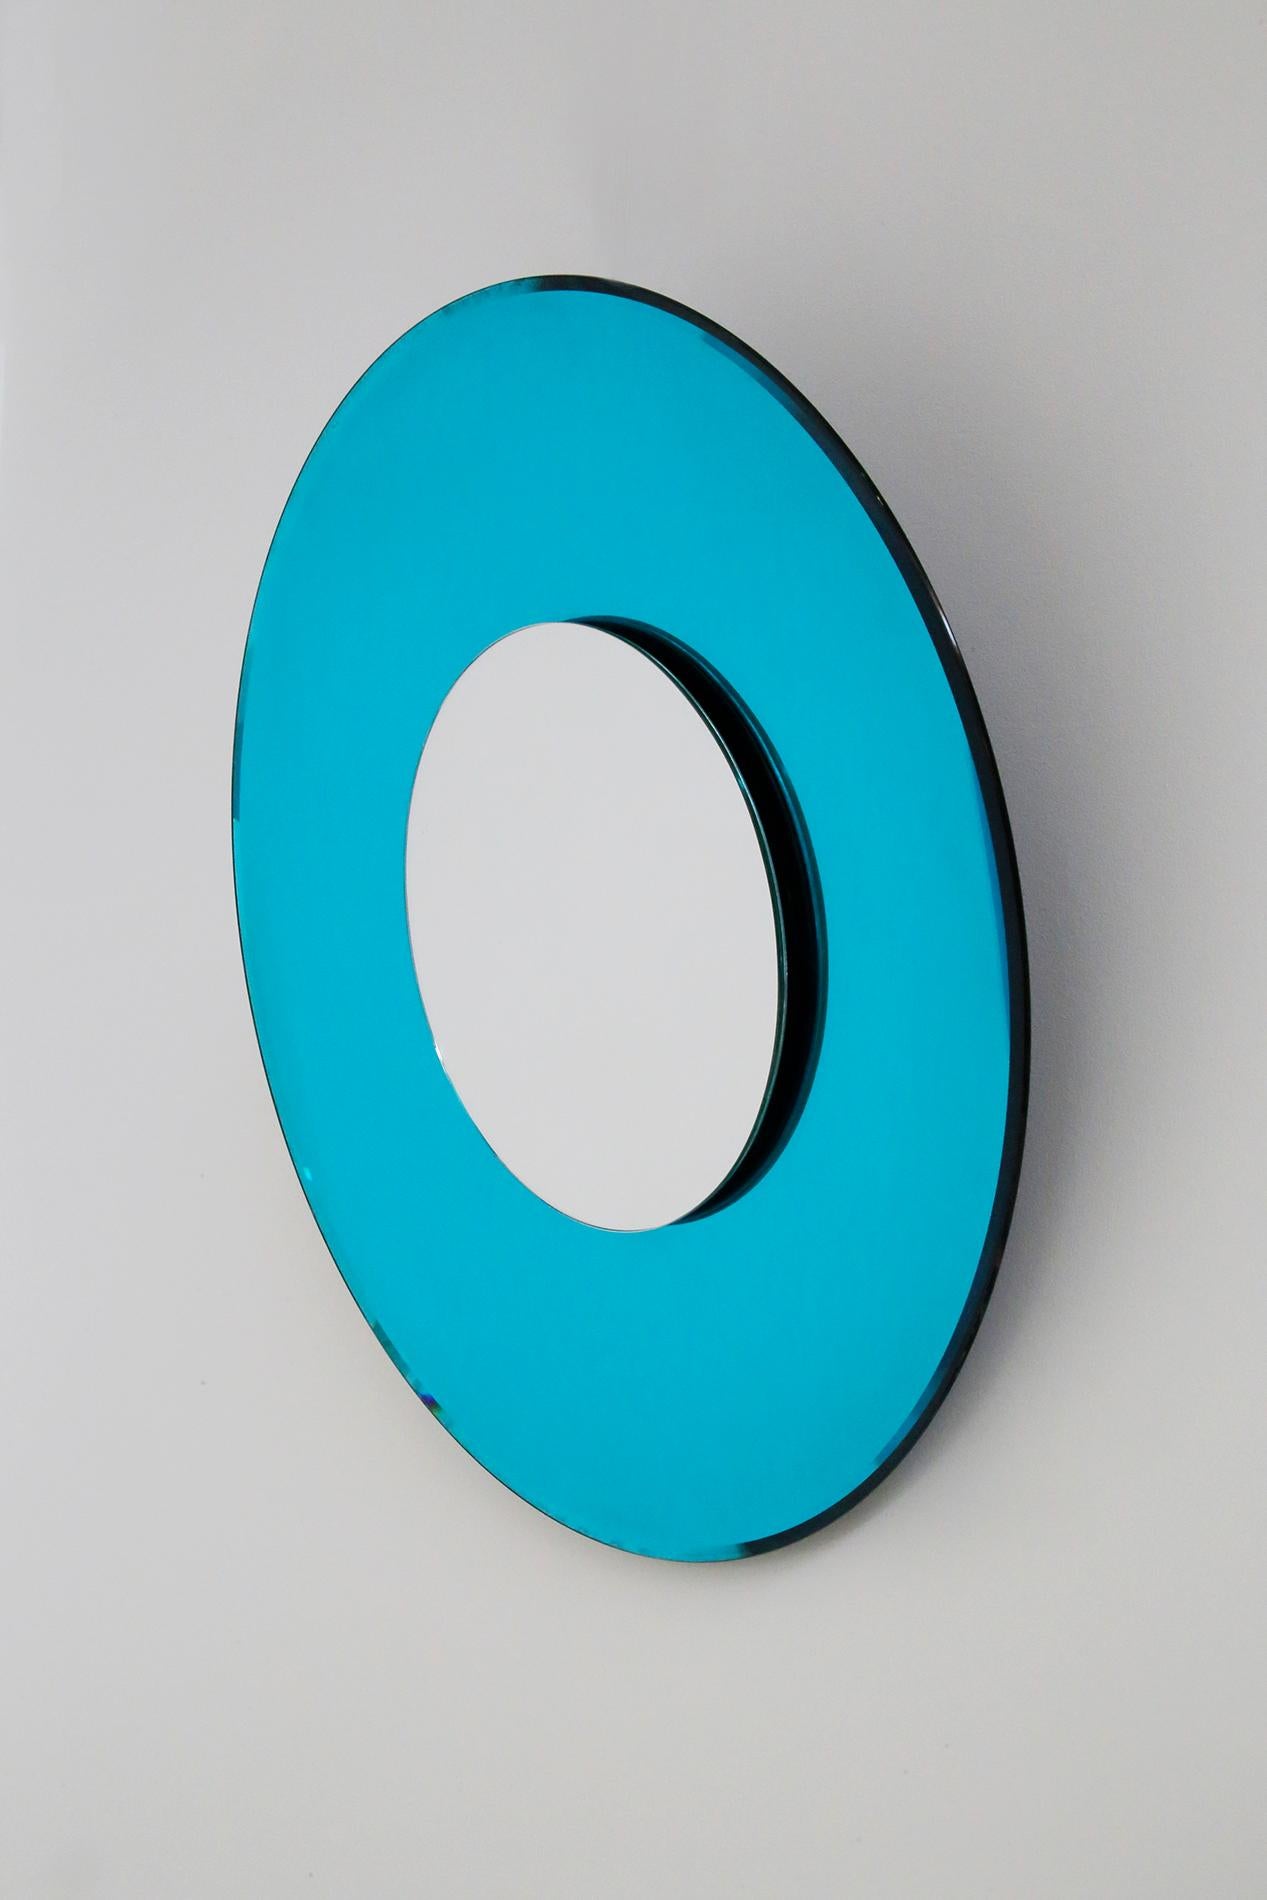 Contemporary Blue Mirror in Style Fontana Arte by Effetto Vetro, 2010 4